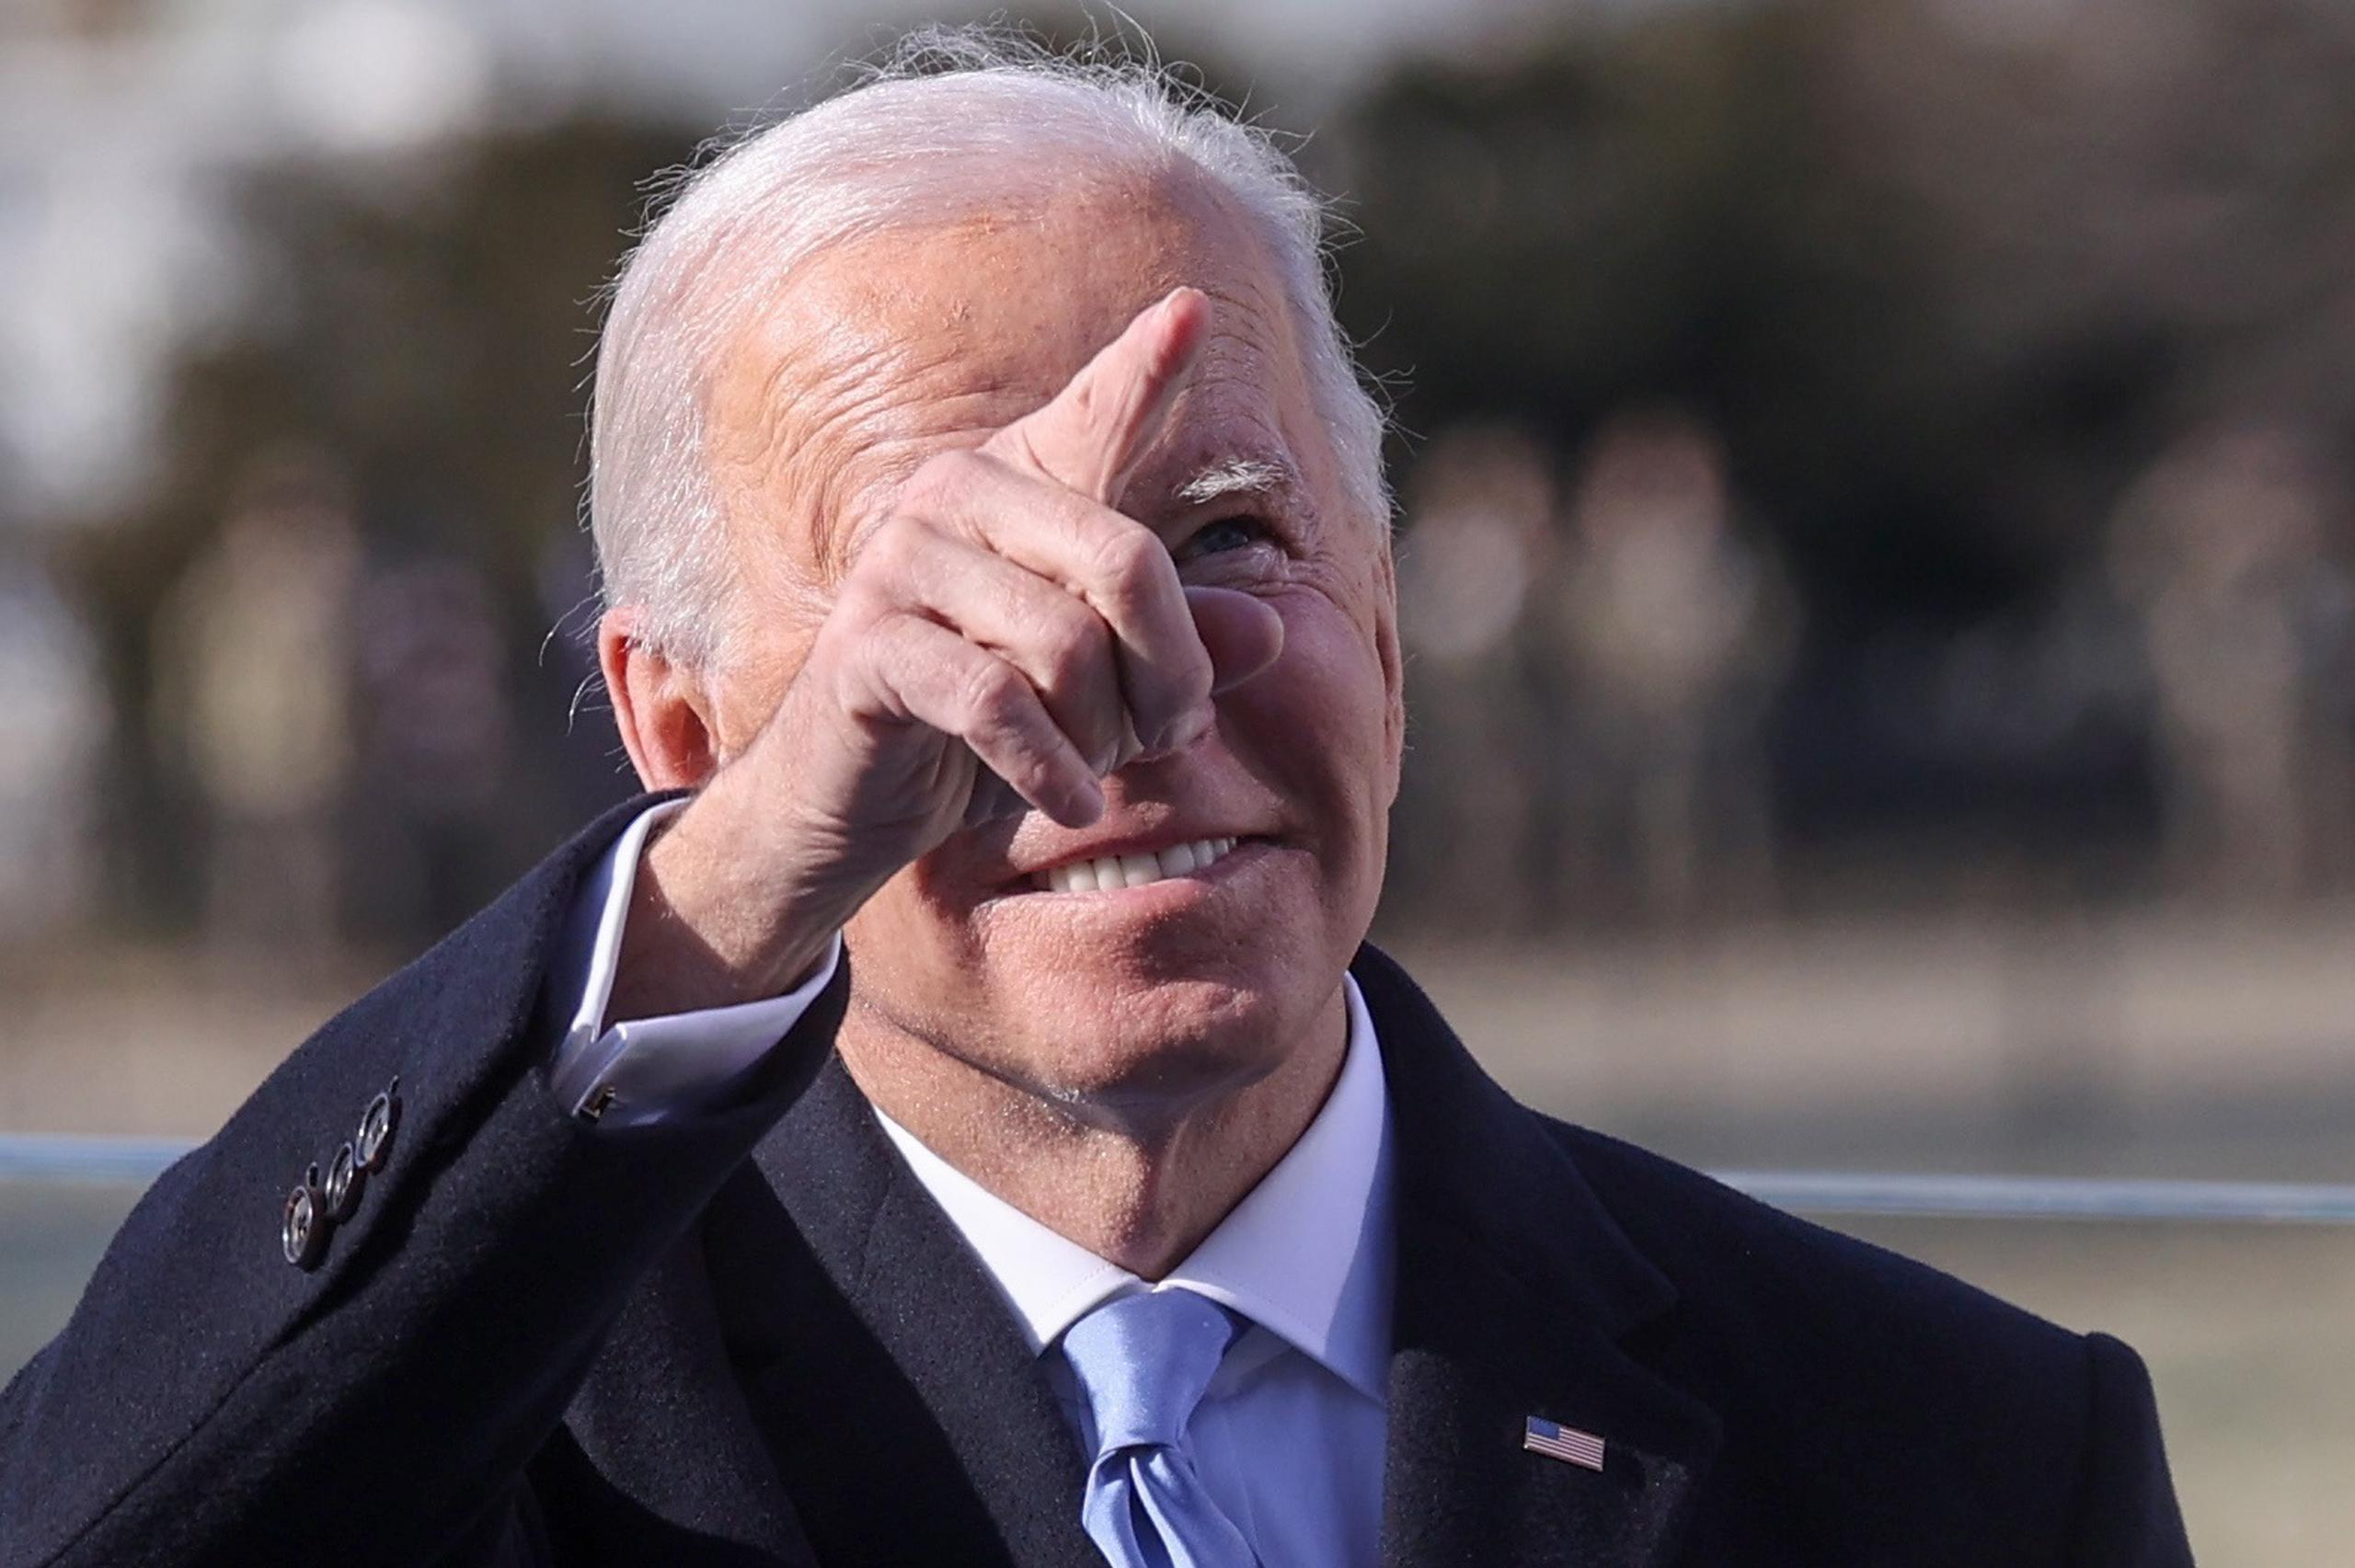 Durante la campaña, Biden ya se comprometió a esta suspensión de las deportaciones aunque en ese entonces lo hizo sin excepciones.